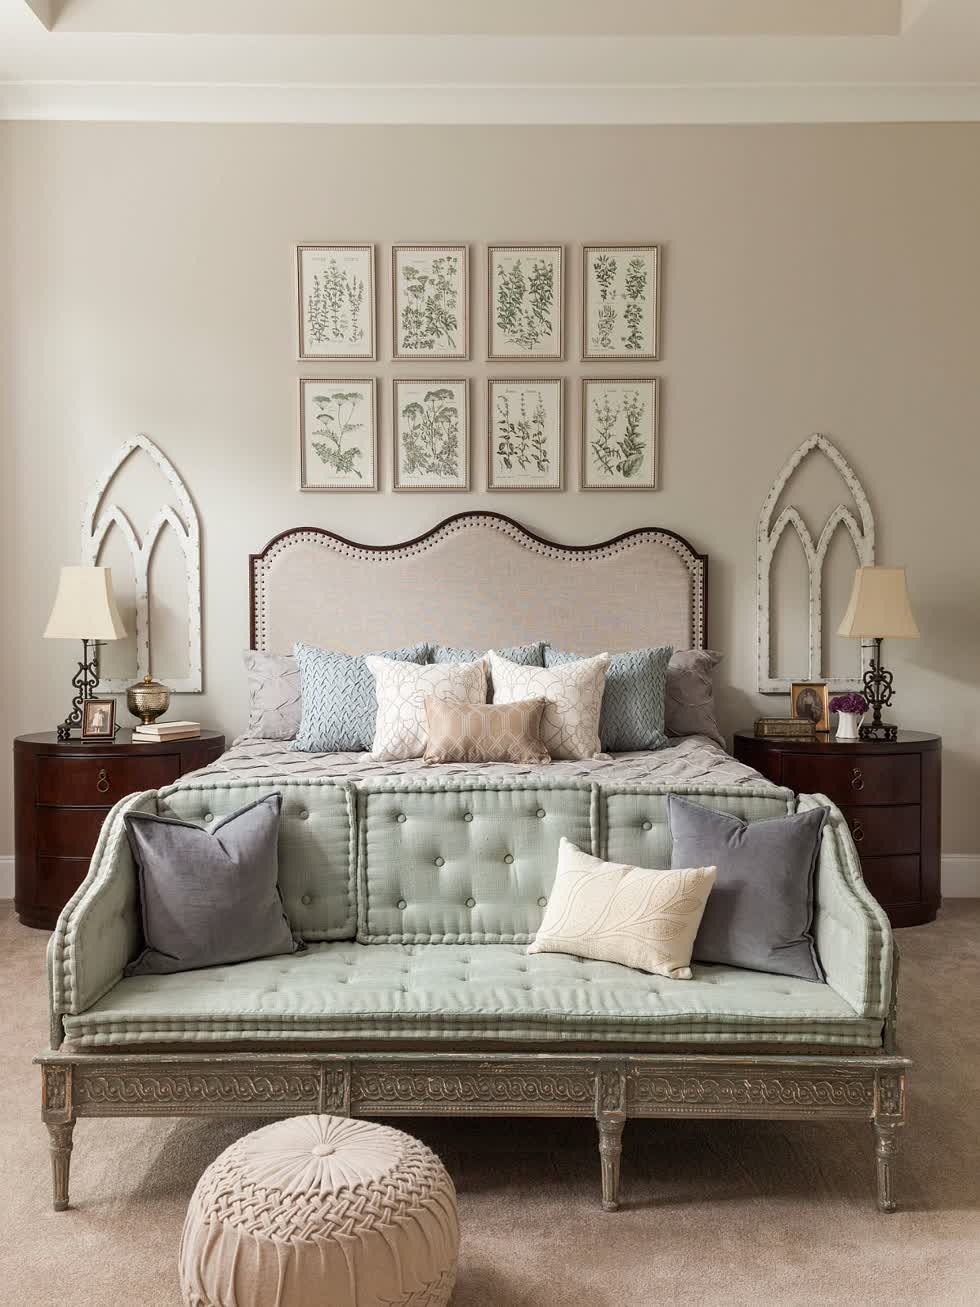 Bộ tranh thực vật đầu giường mang đến cái nhìn mới lạ, hút mắt cho phòng ngủ mùa hè phong cách cổ điển sang trọng.